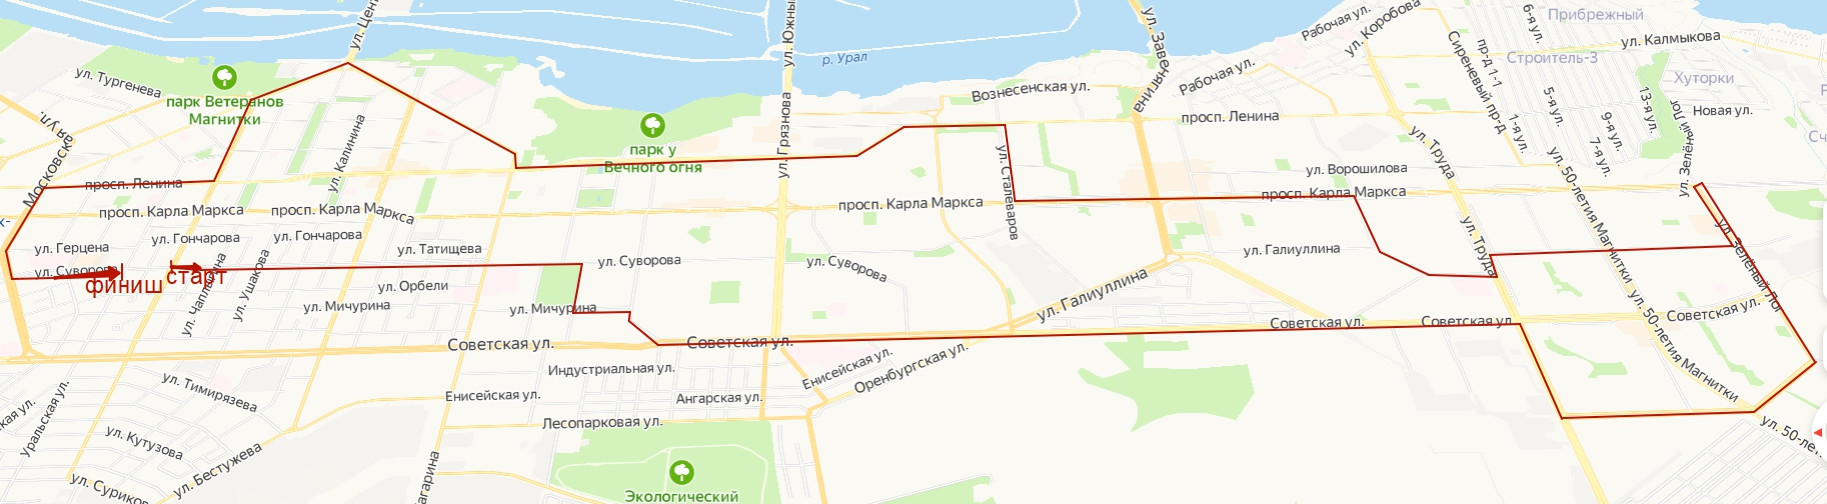 маршрут для исследования городских дорог